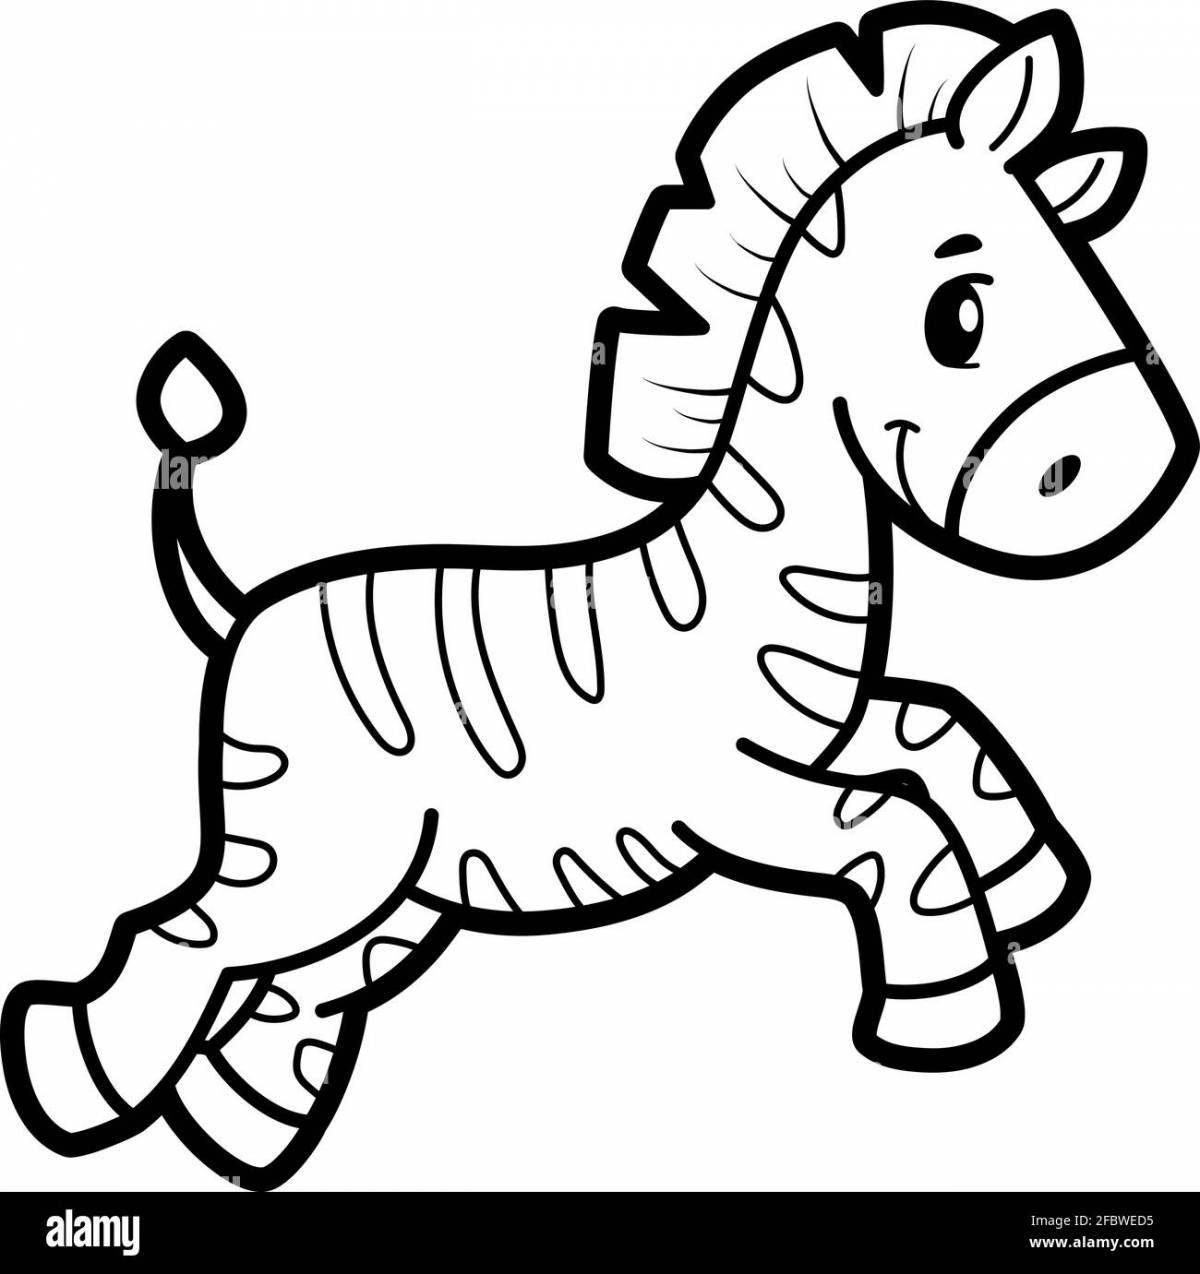 Яркая зебра-раскраска для детей 3-4 лет